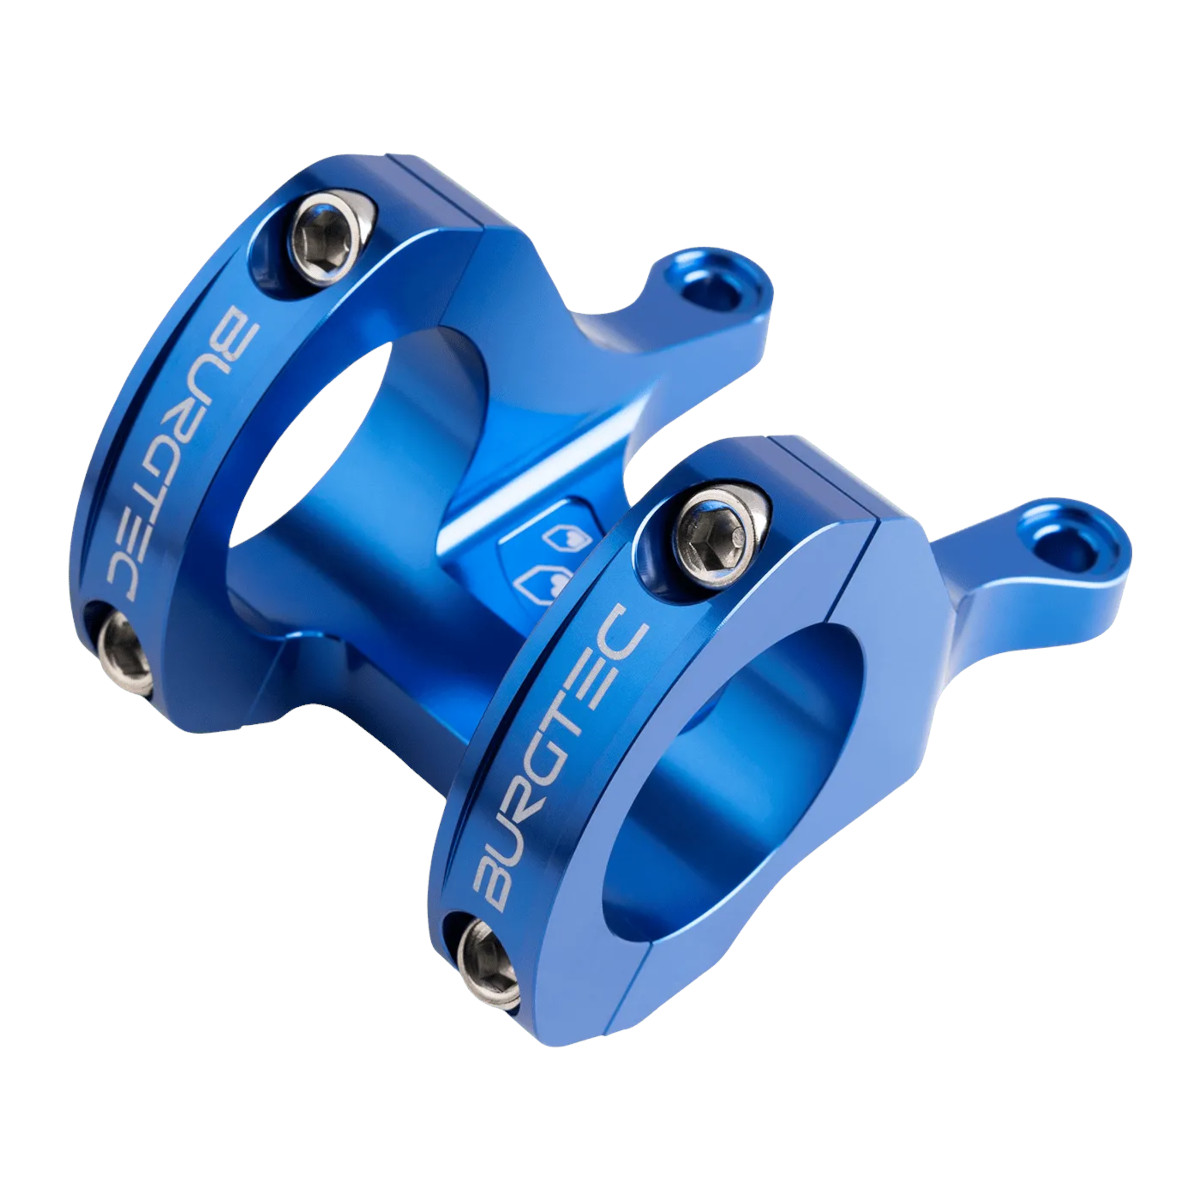 Productfoto van Burgtec Direct Mount MK3 Stuurpen - 35mm - 45mm - deep blue